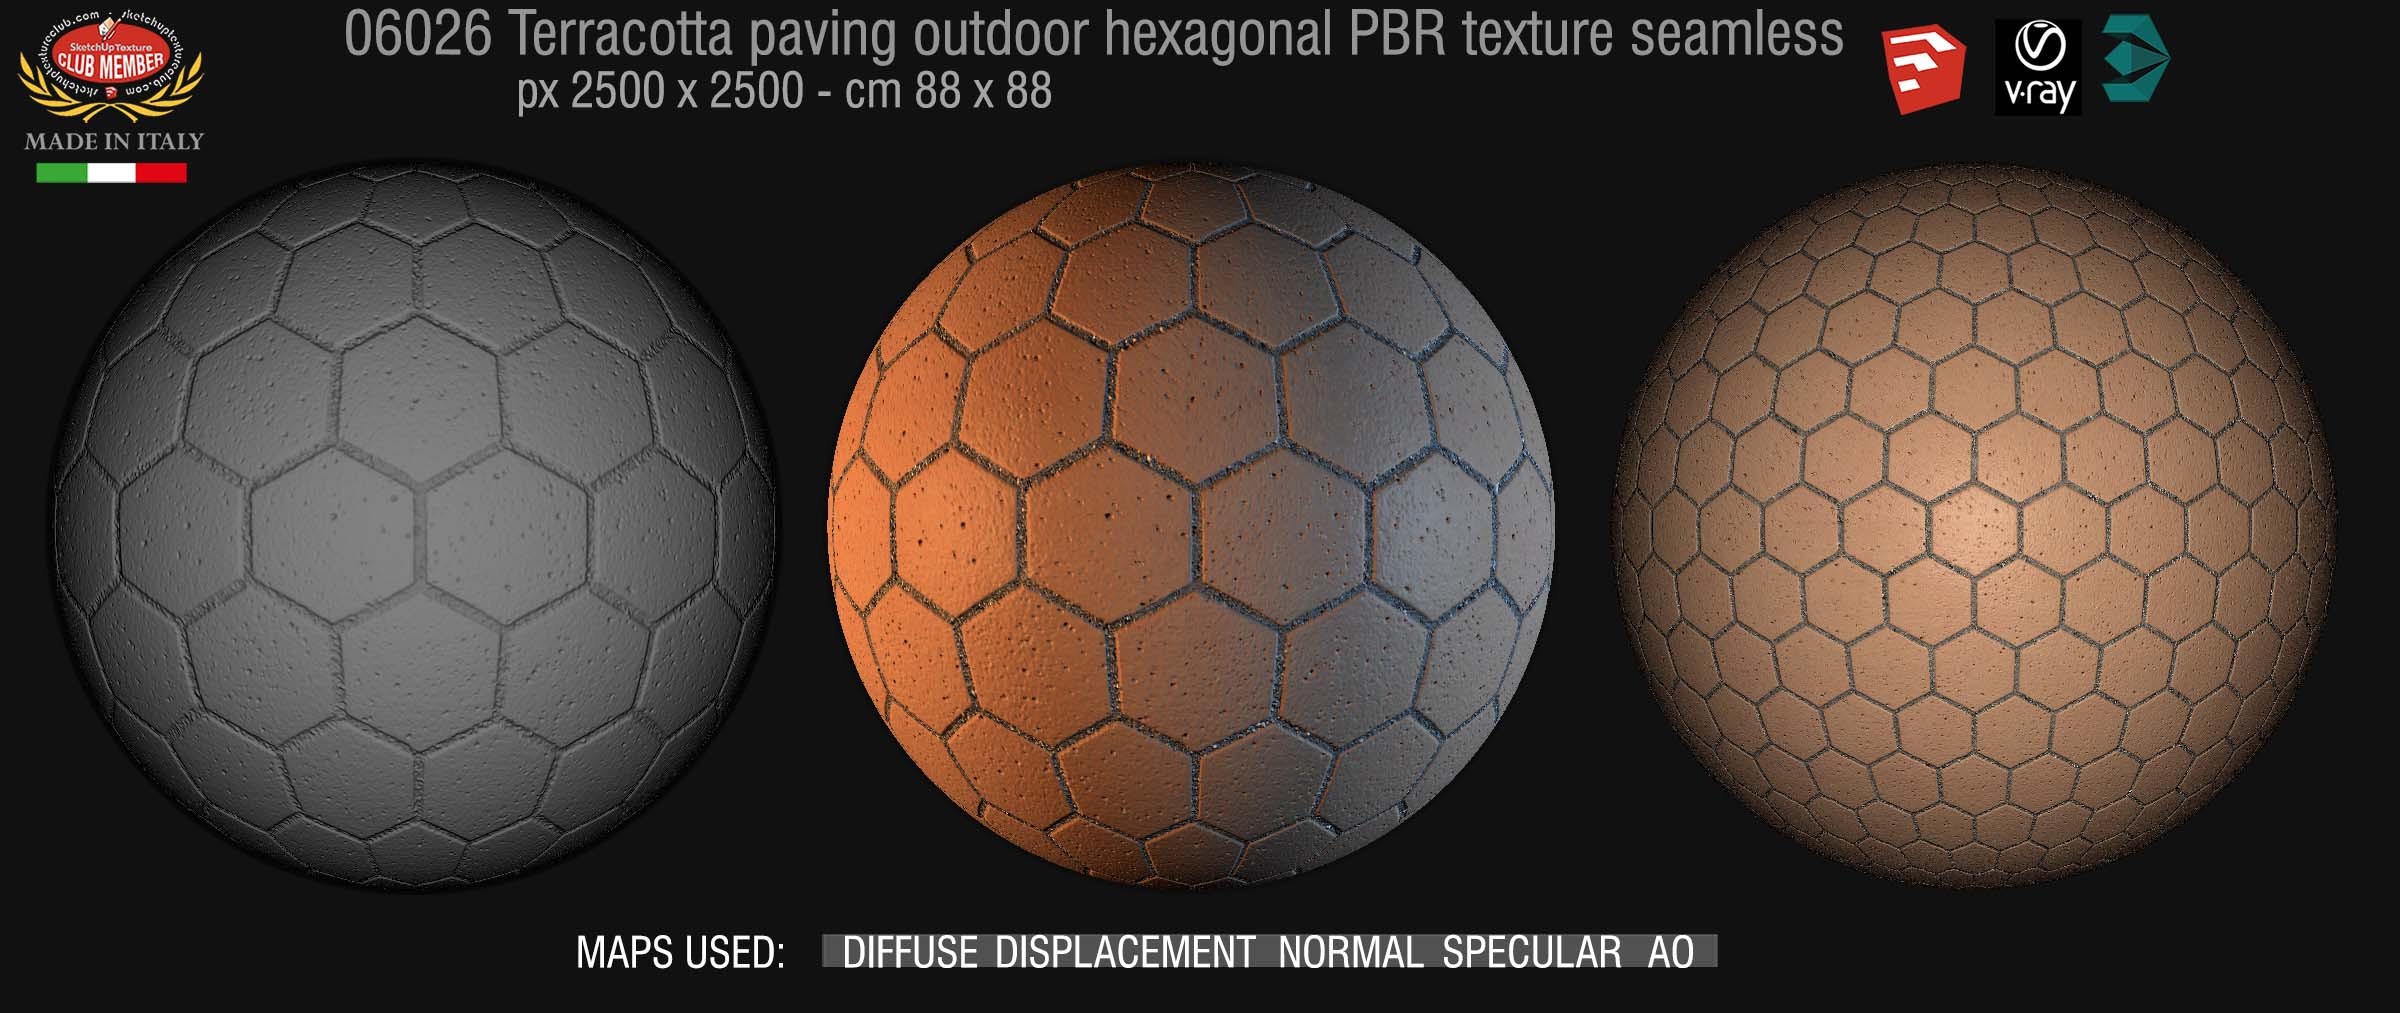 06026 Terracotta paving outdoor hexagonal PBR texture seamless DEMO